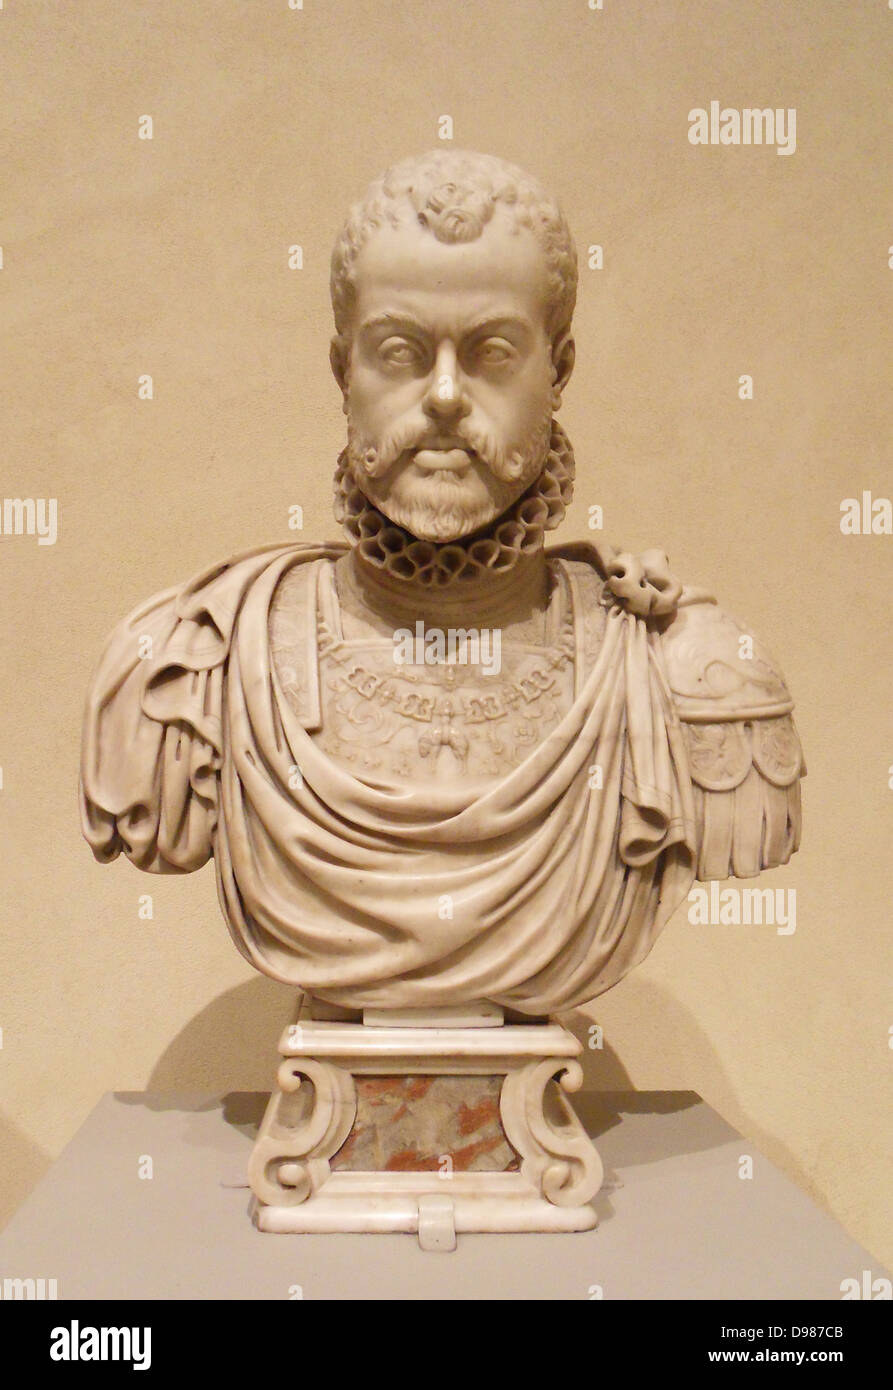 Philippe II d'Espagne, régna comme roi 1556-98. Buste en marbre par Pompeo Leoni (ca. 1533-1608) 16e siècle Banque D'Images